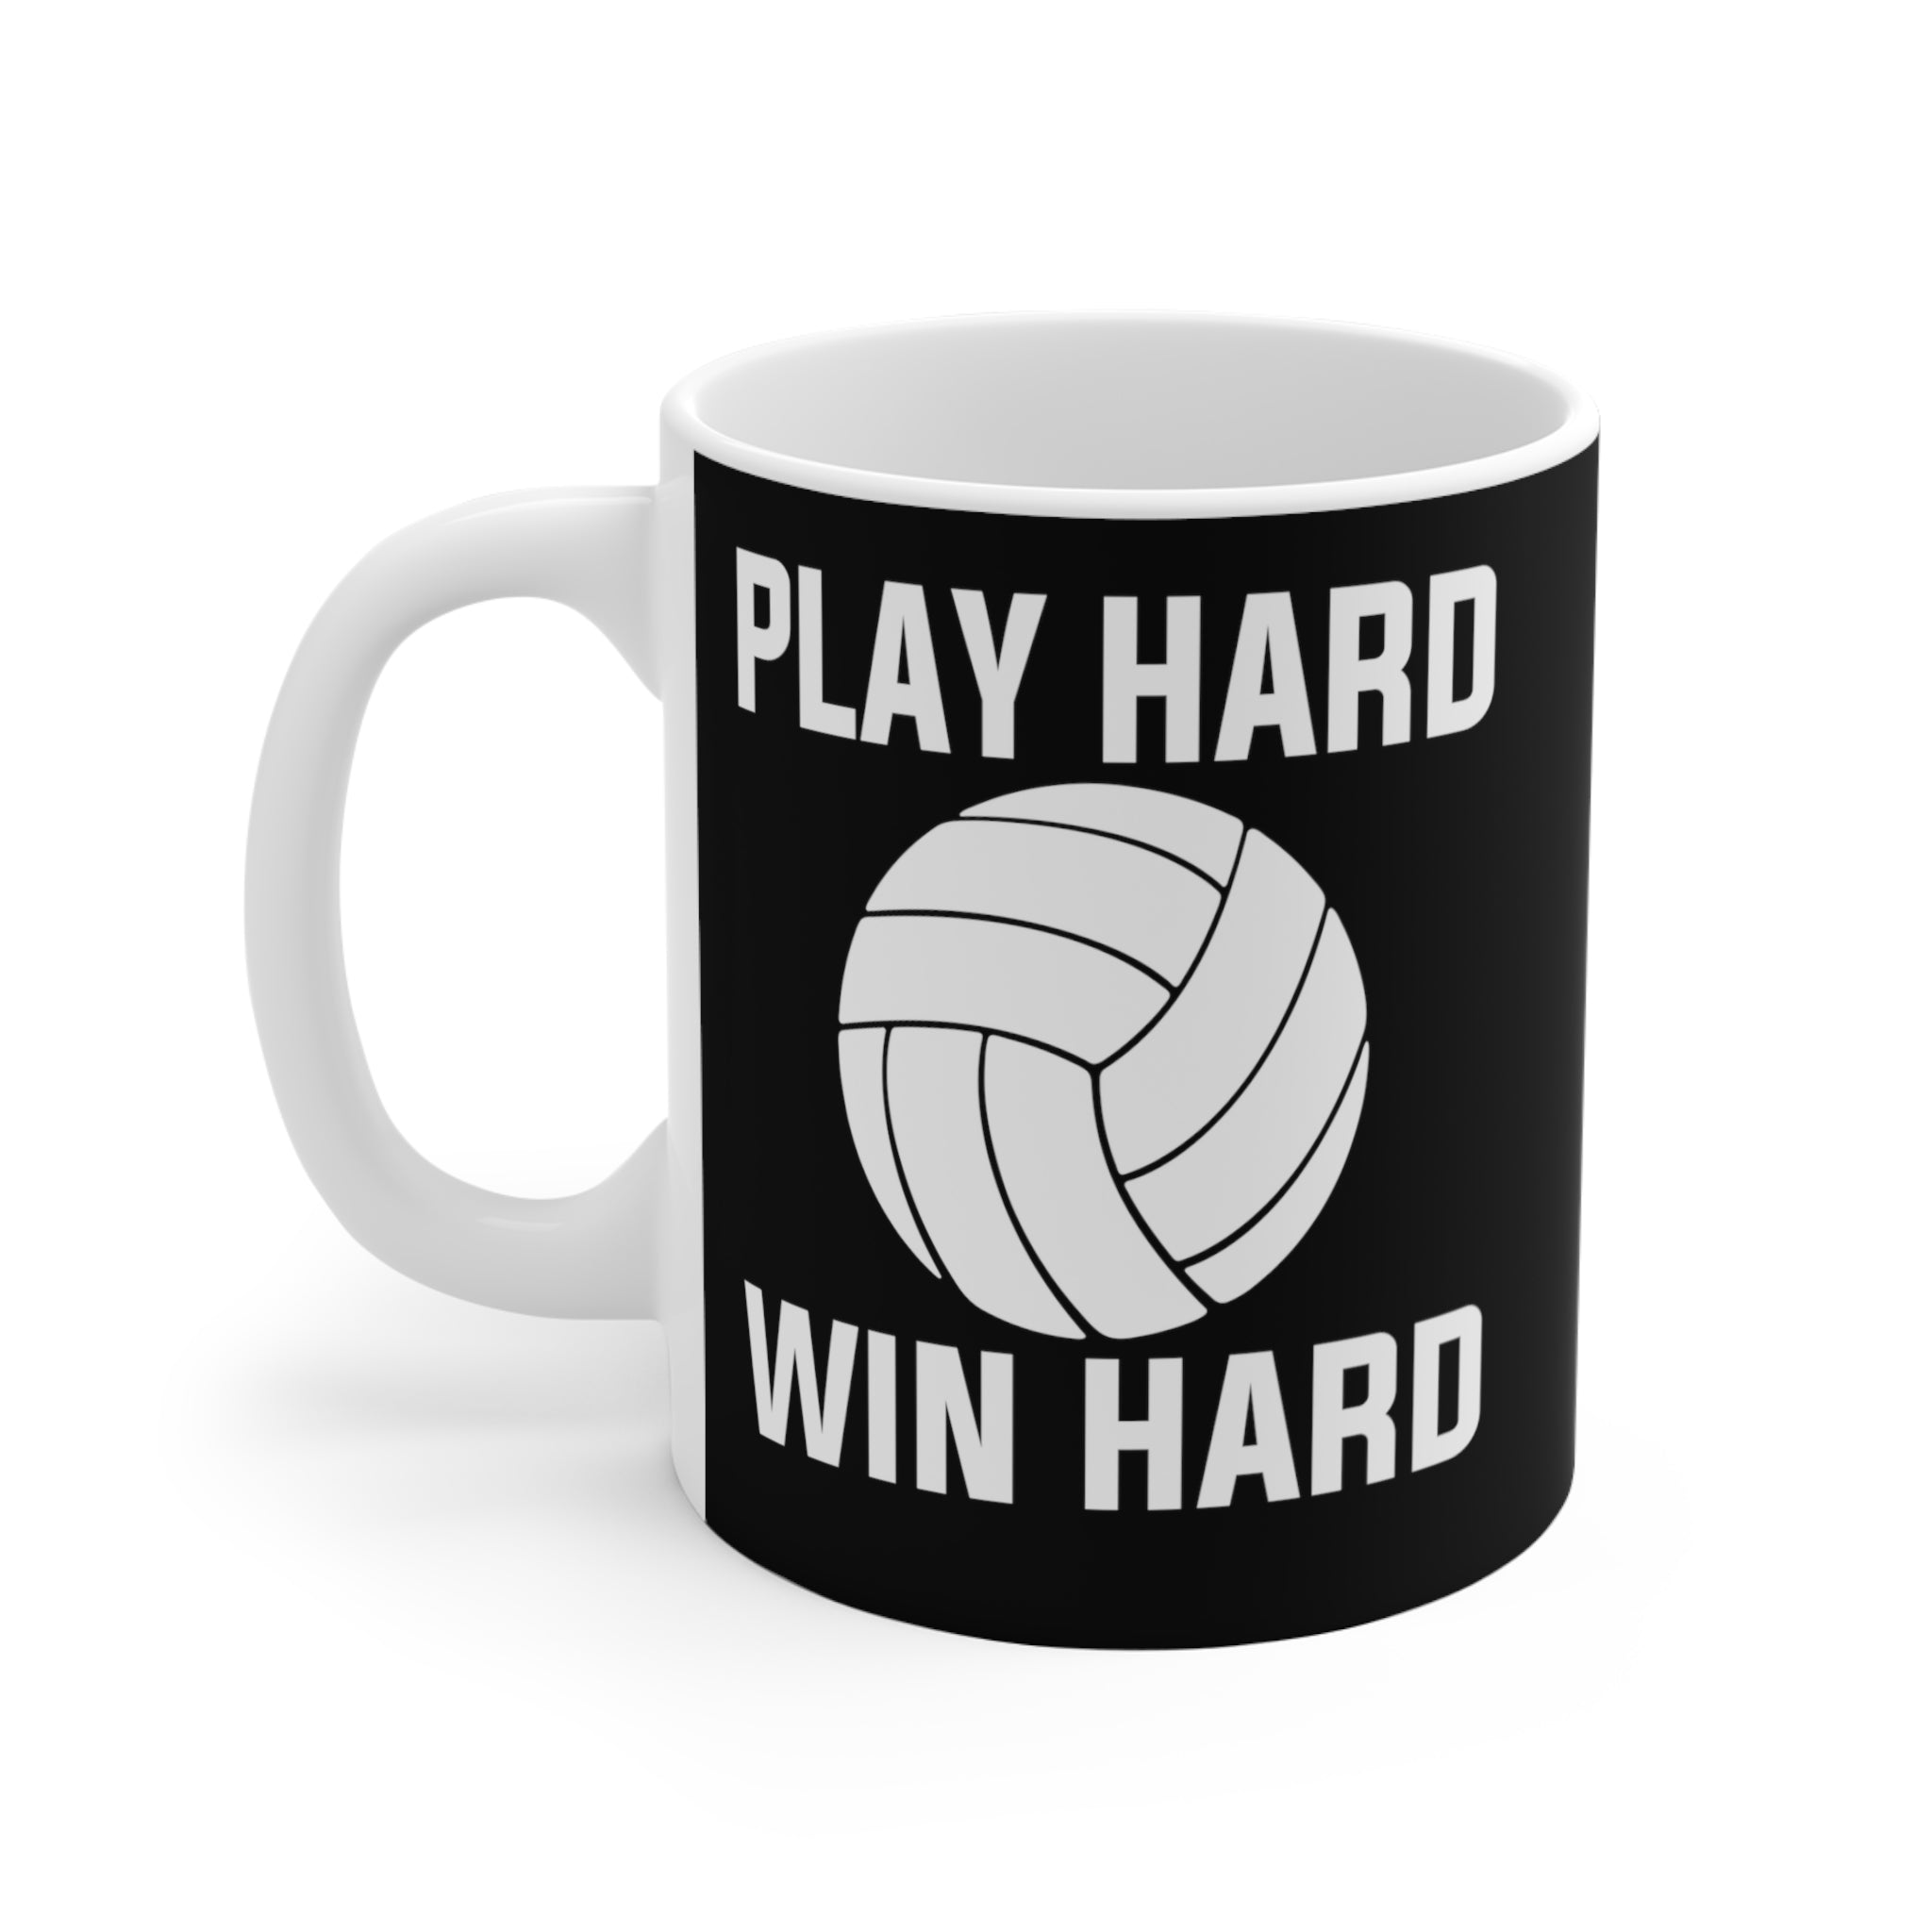 Play Hard Win Hard Coffee Cup